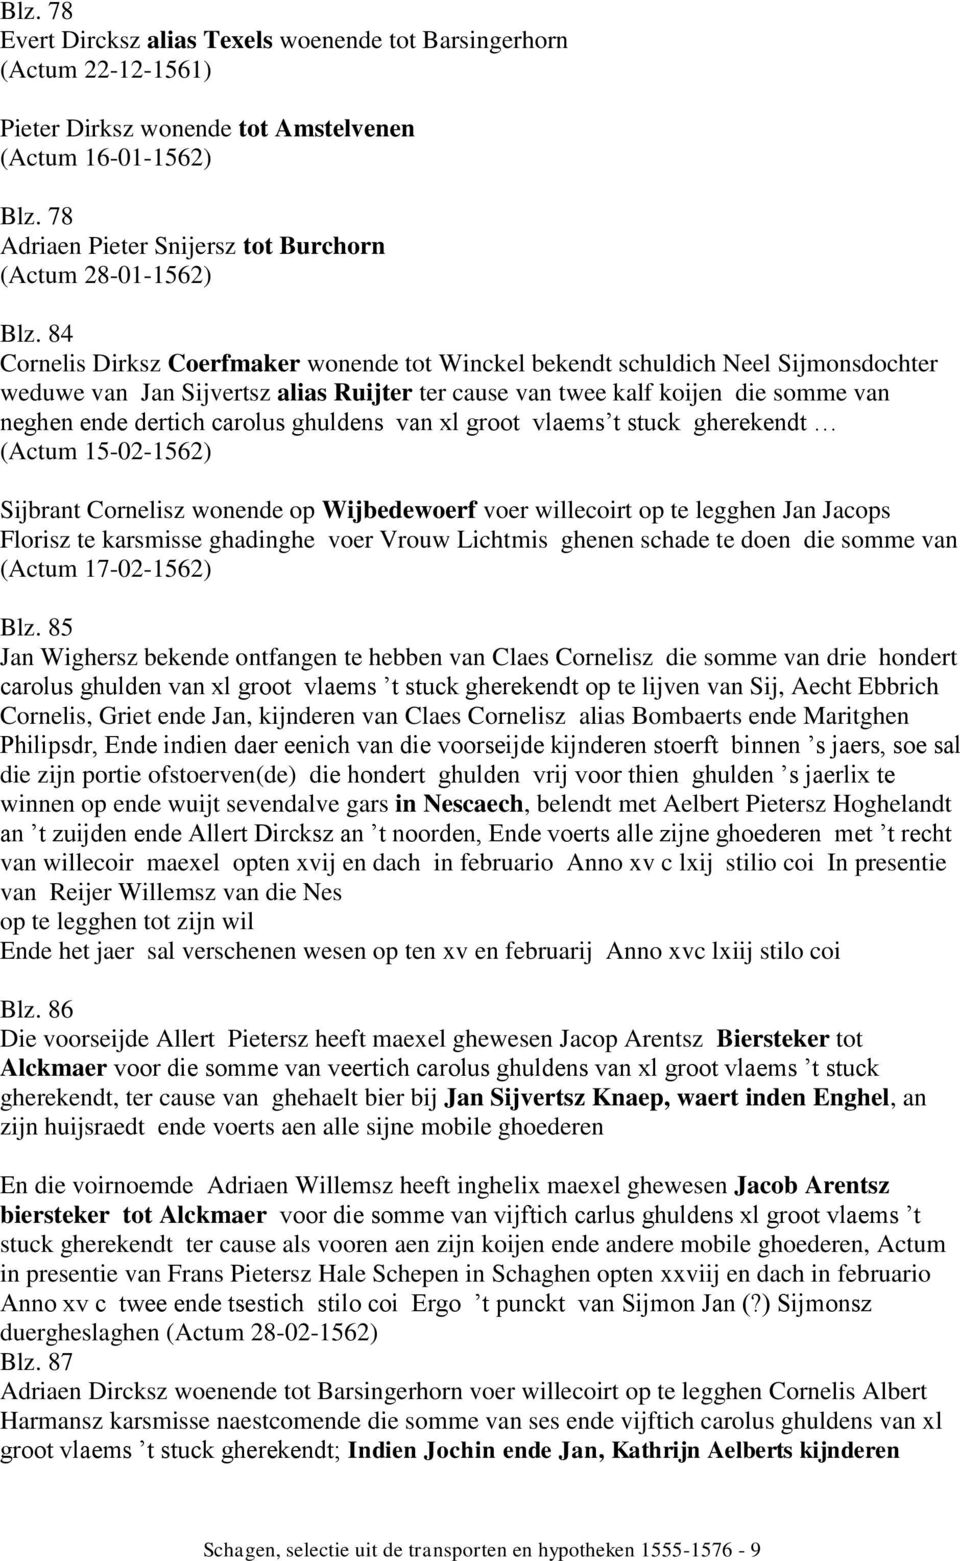 84 Cornelis Dirksz Coerfmaker wonende tot Winckel bekendt schuldich Neel Sijmonsdochter weduwe van Jan Sijvertsz alias Ruijter ter cause van twee kalf koijen die somme van neghen ende dertich carolus